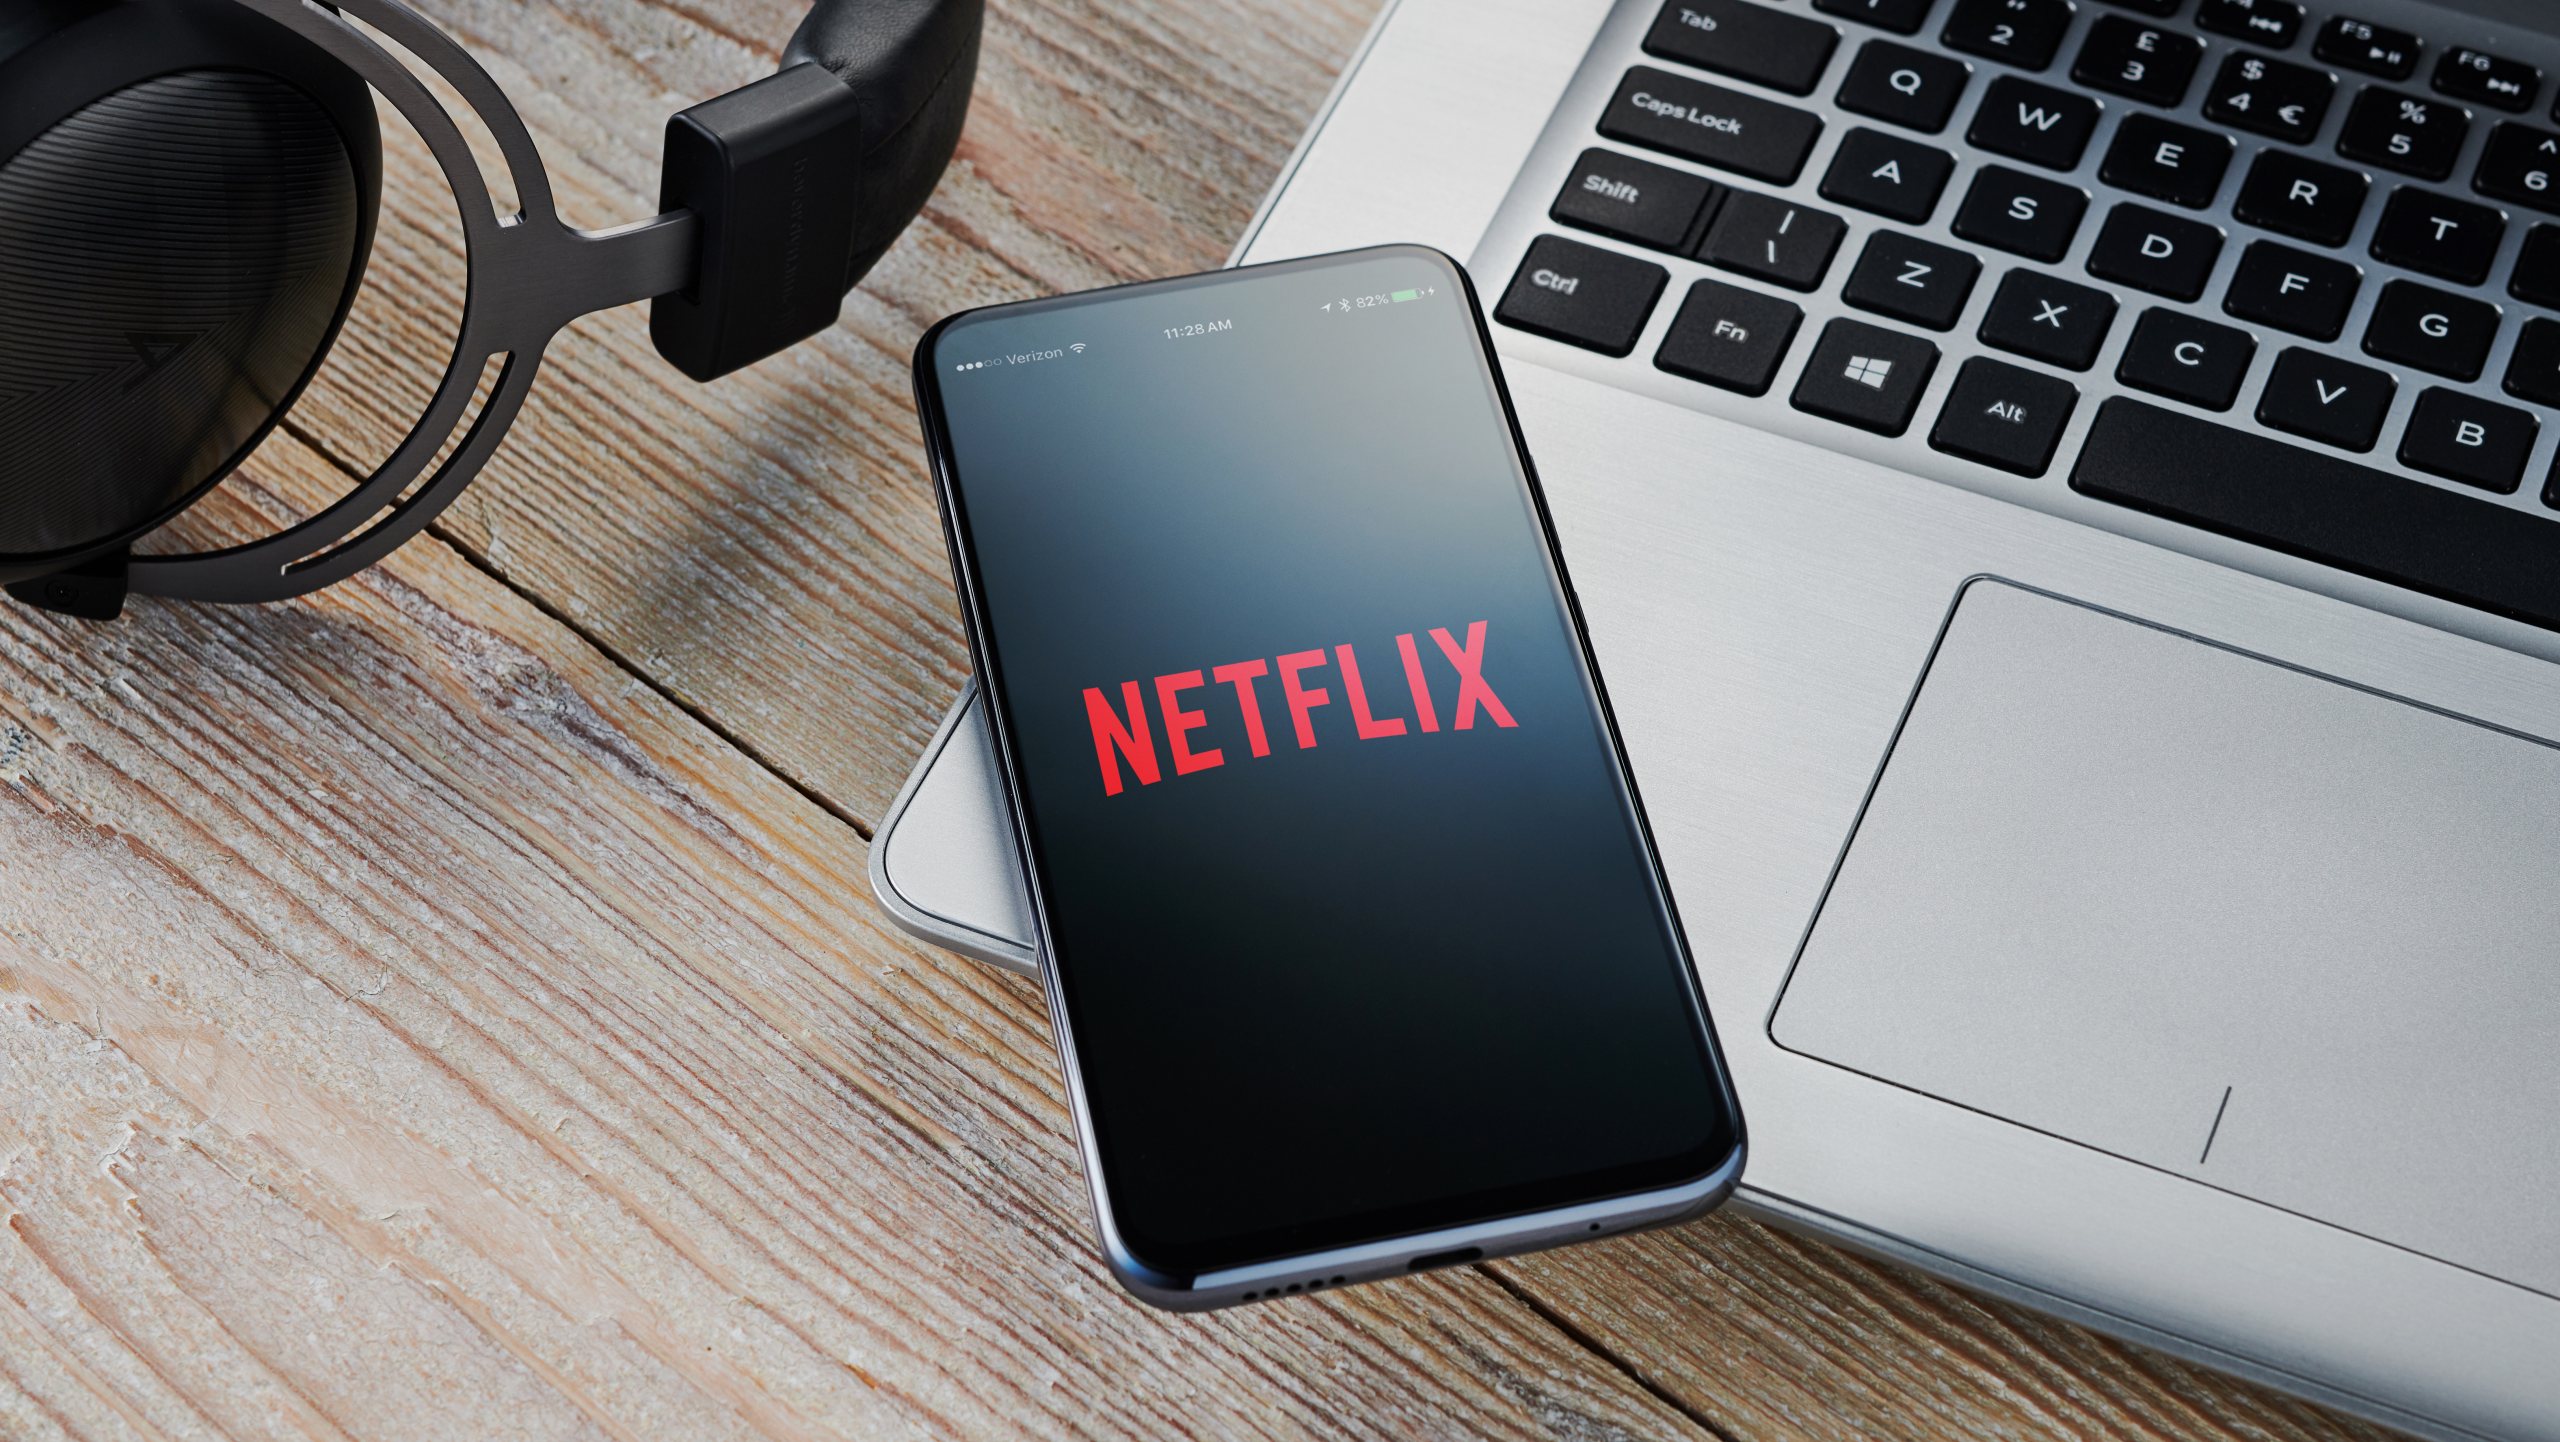 A Netflix quer continuar a apostar em &quot;autores notáveis&quot;, que serão acrescentados aos conteúdos já disponíveis